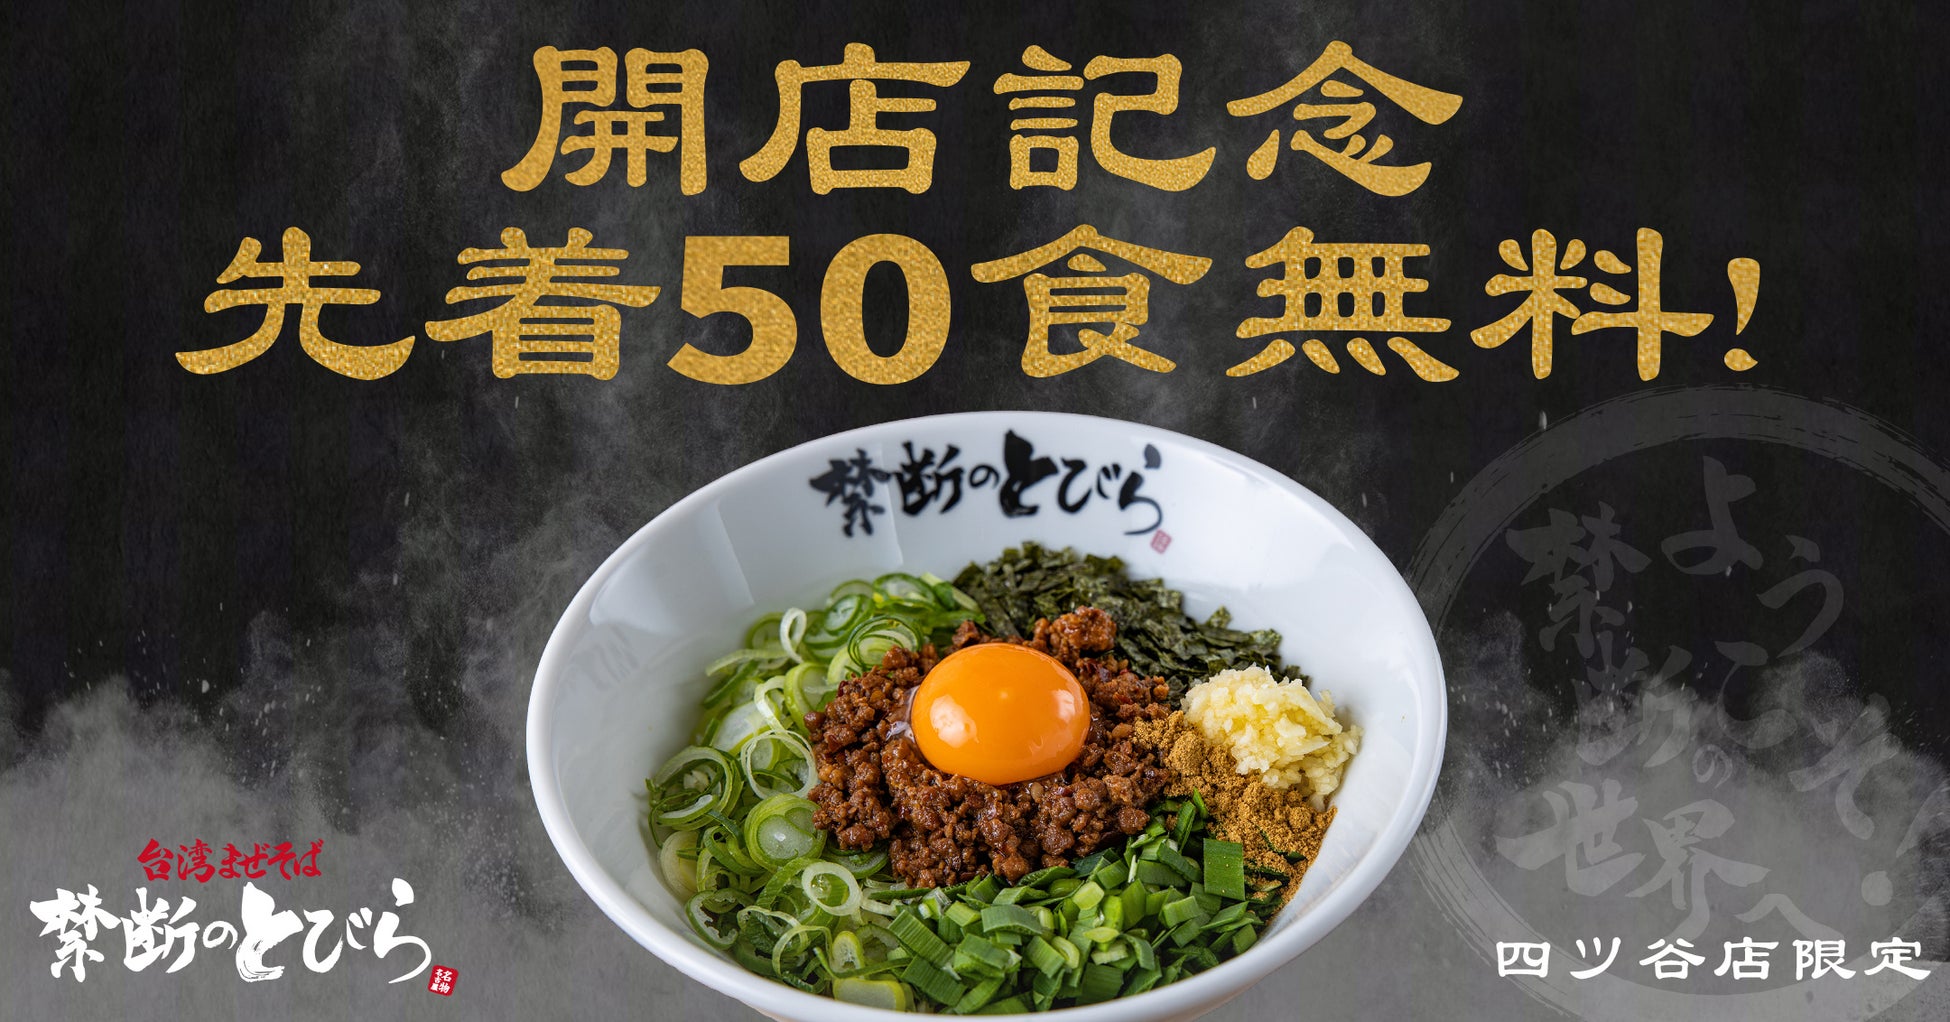 【先着50食無料】台湾まぜそば『禁断のとびら』四ツ谷店が6月8日（木）OPEN！8日〜11日までの4日間は1日先着50食無料キャンペーンを実施致します。